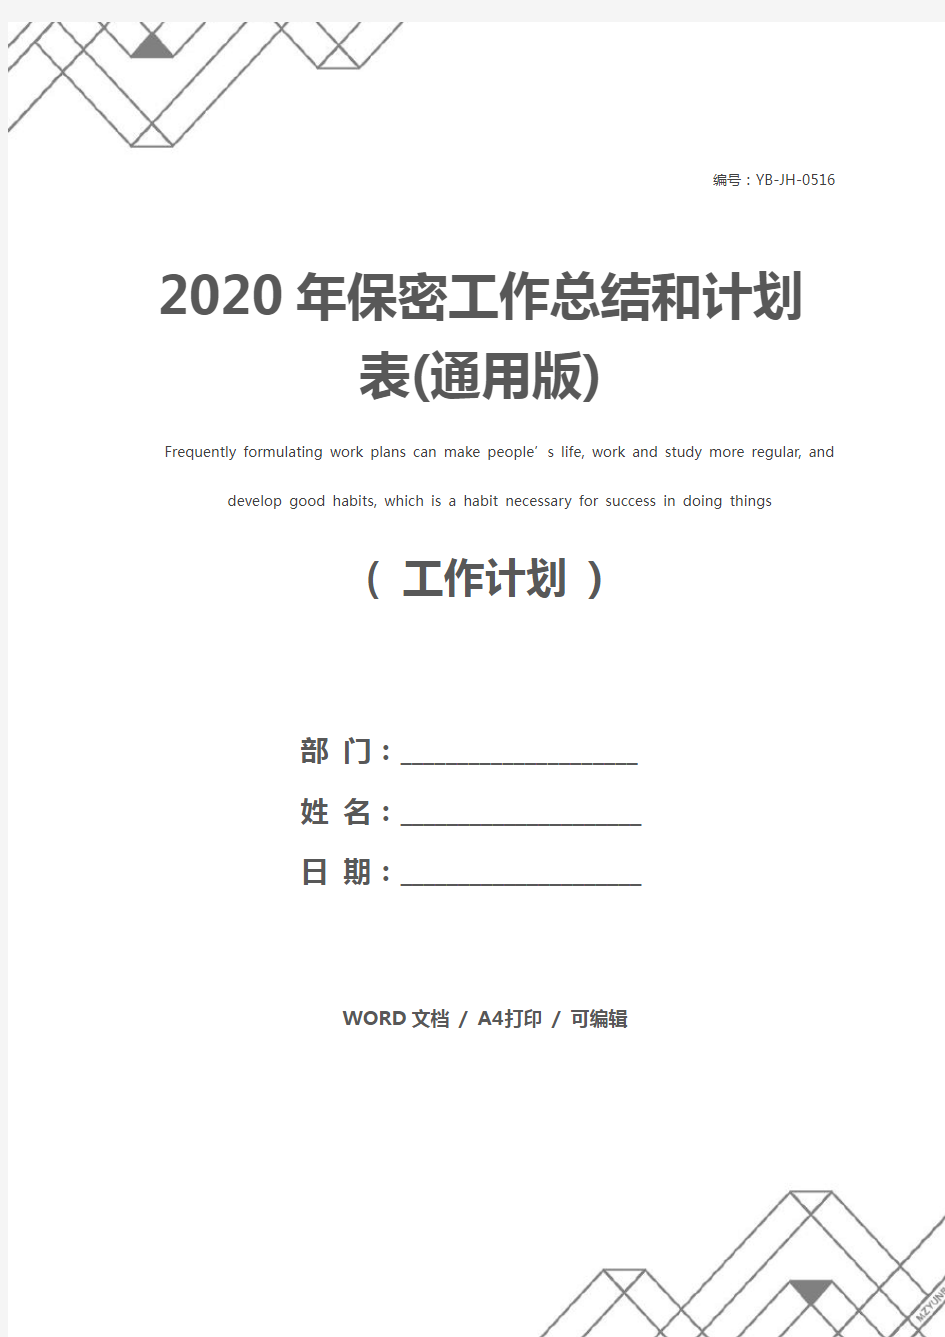 2020年保密工作总结和计划表(通用版)